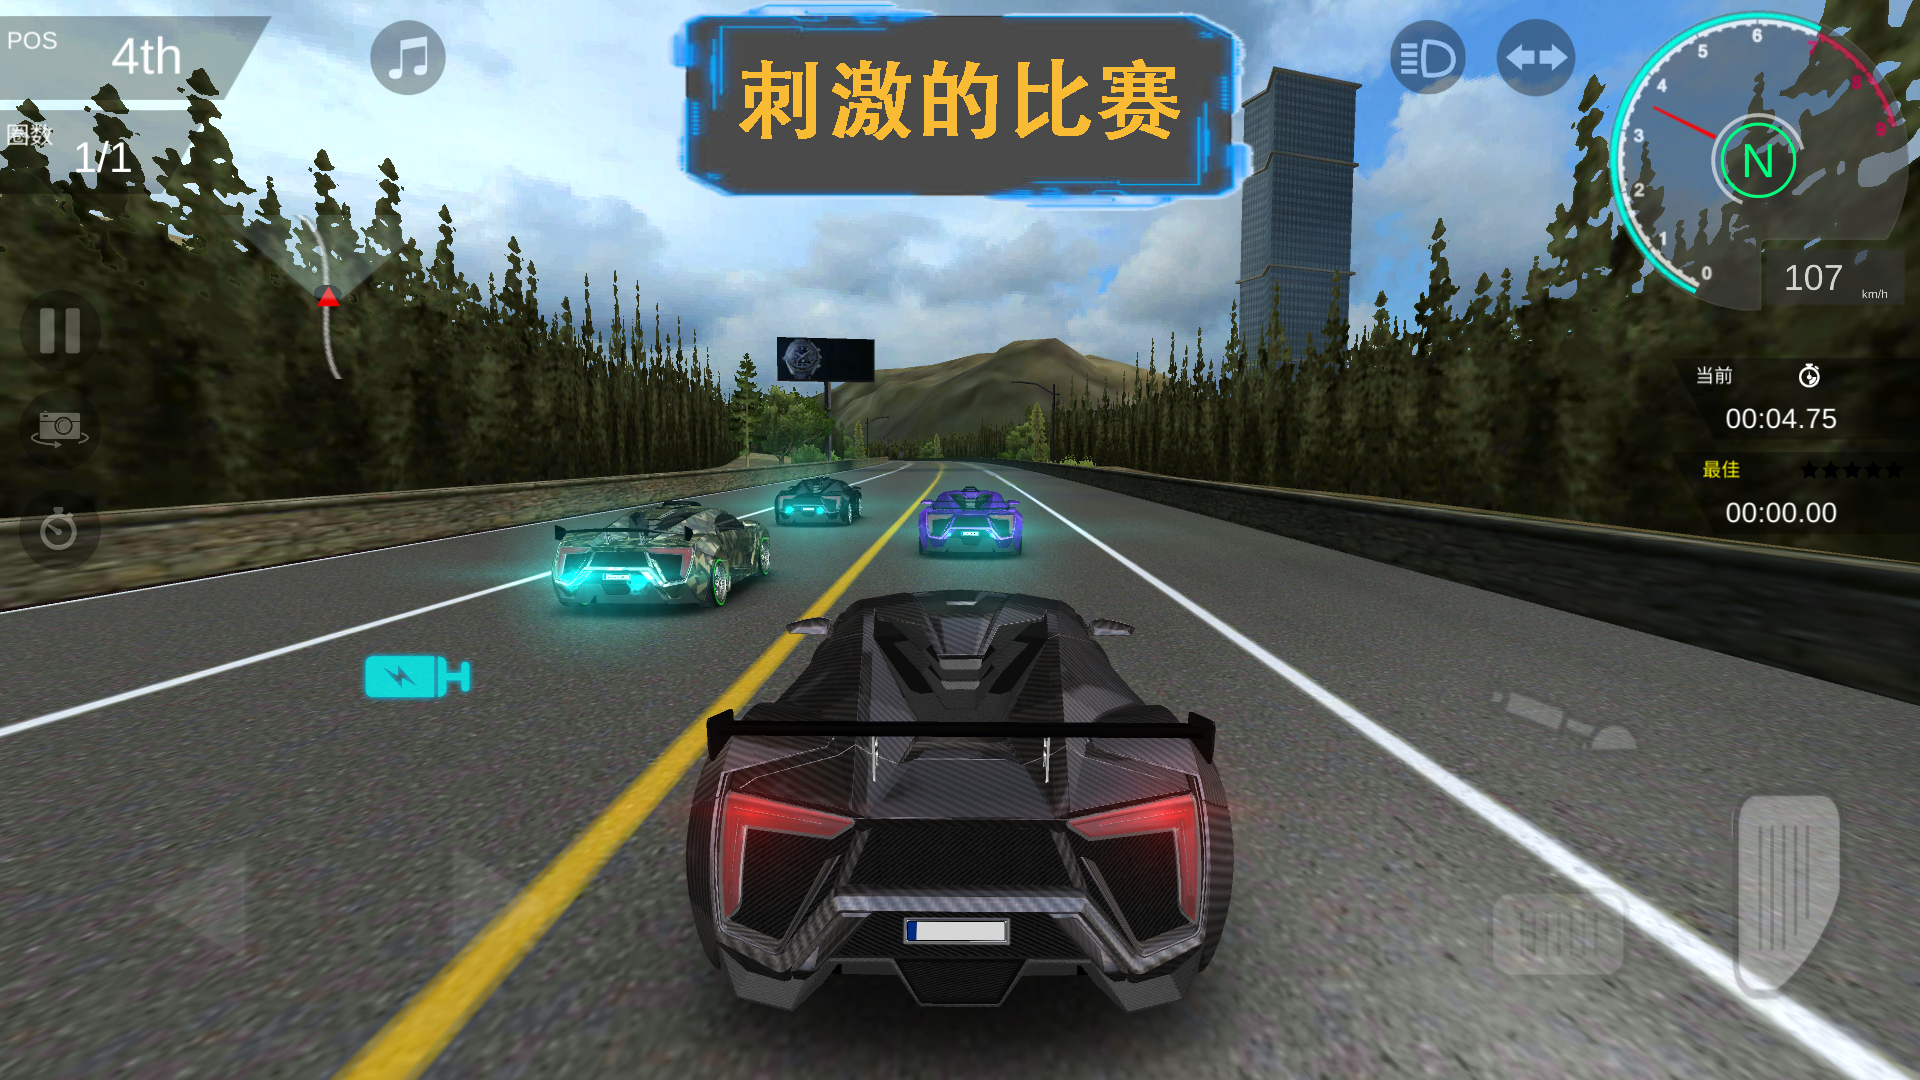 Screenshot 1 of อากินะ ยามาโมโตะ 2.3